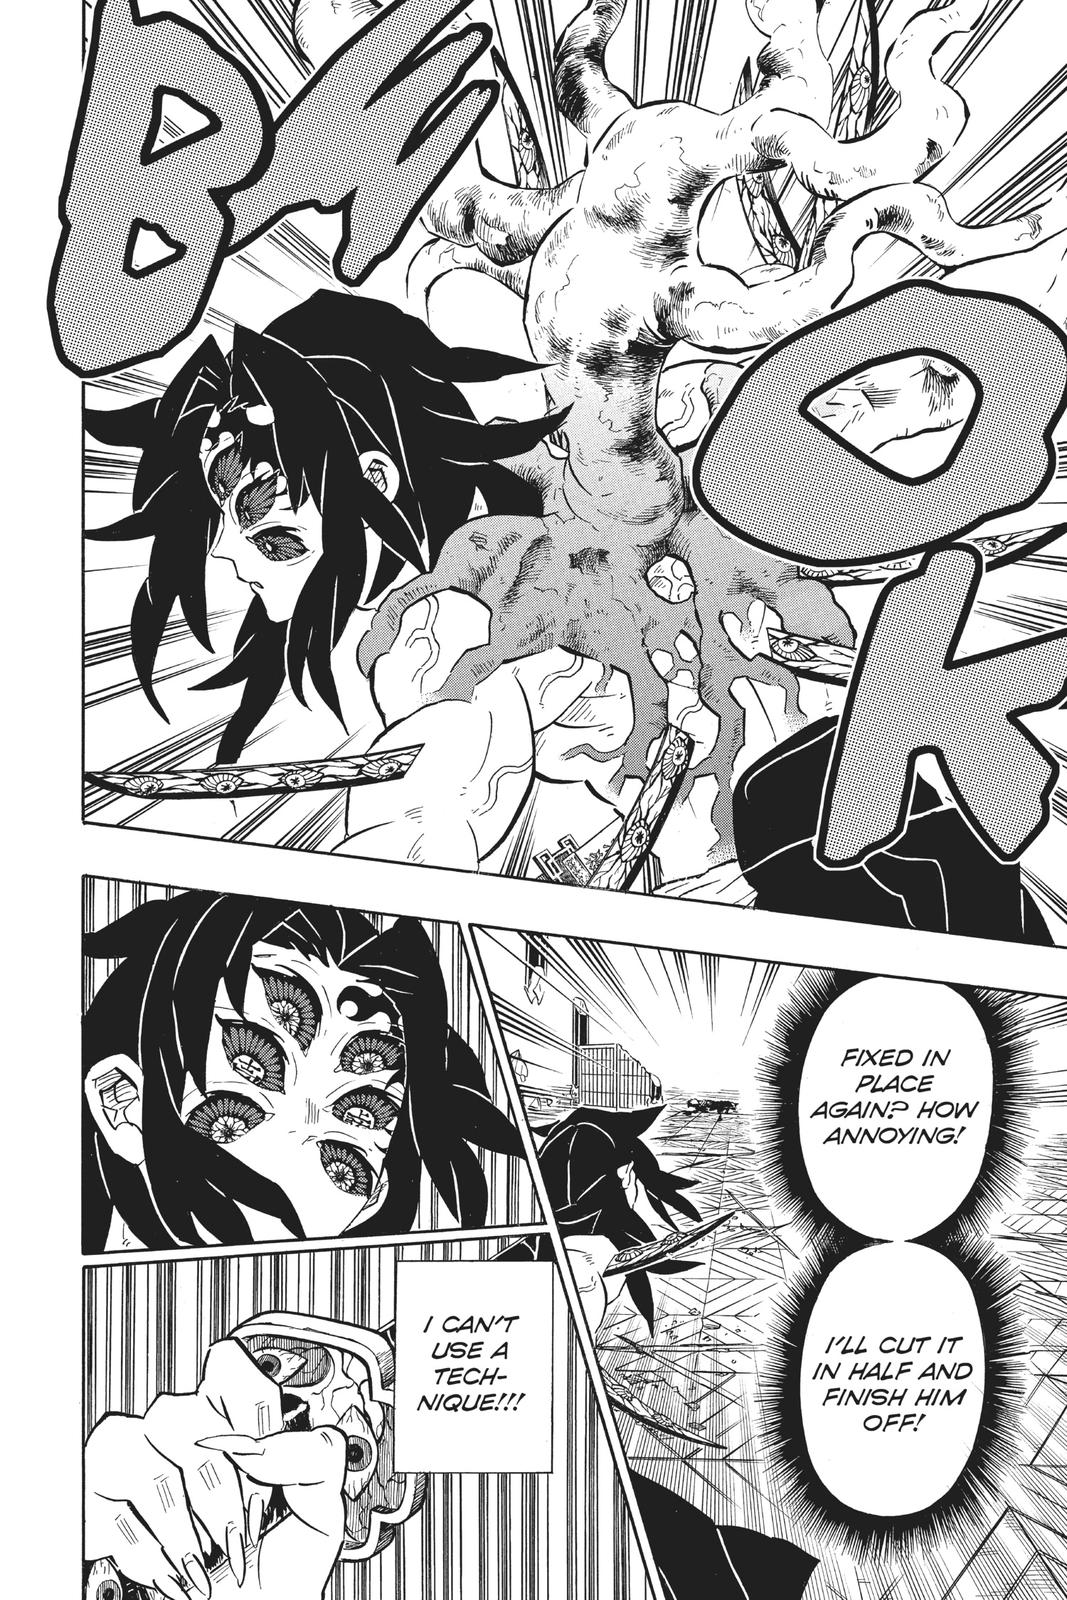 Demon Slayer Manga Manga Chapter - 175 - image 9